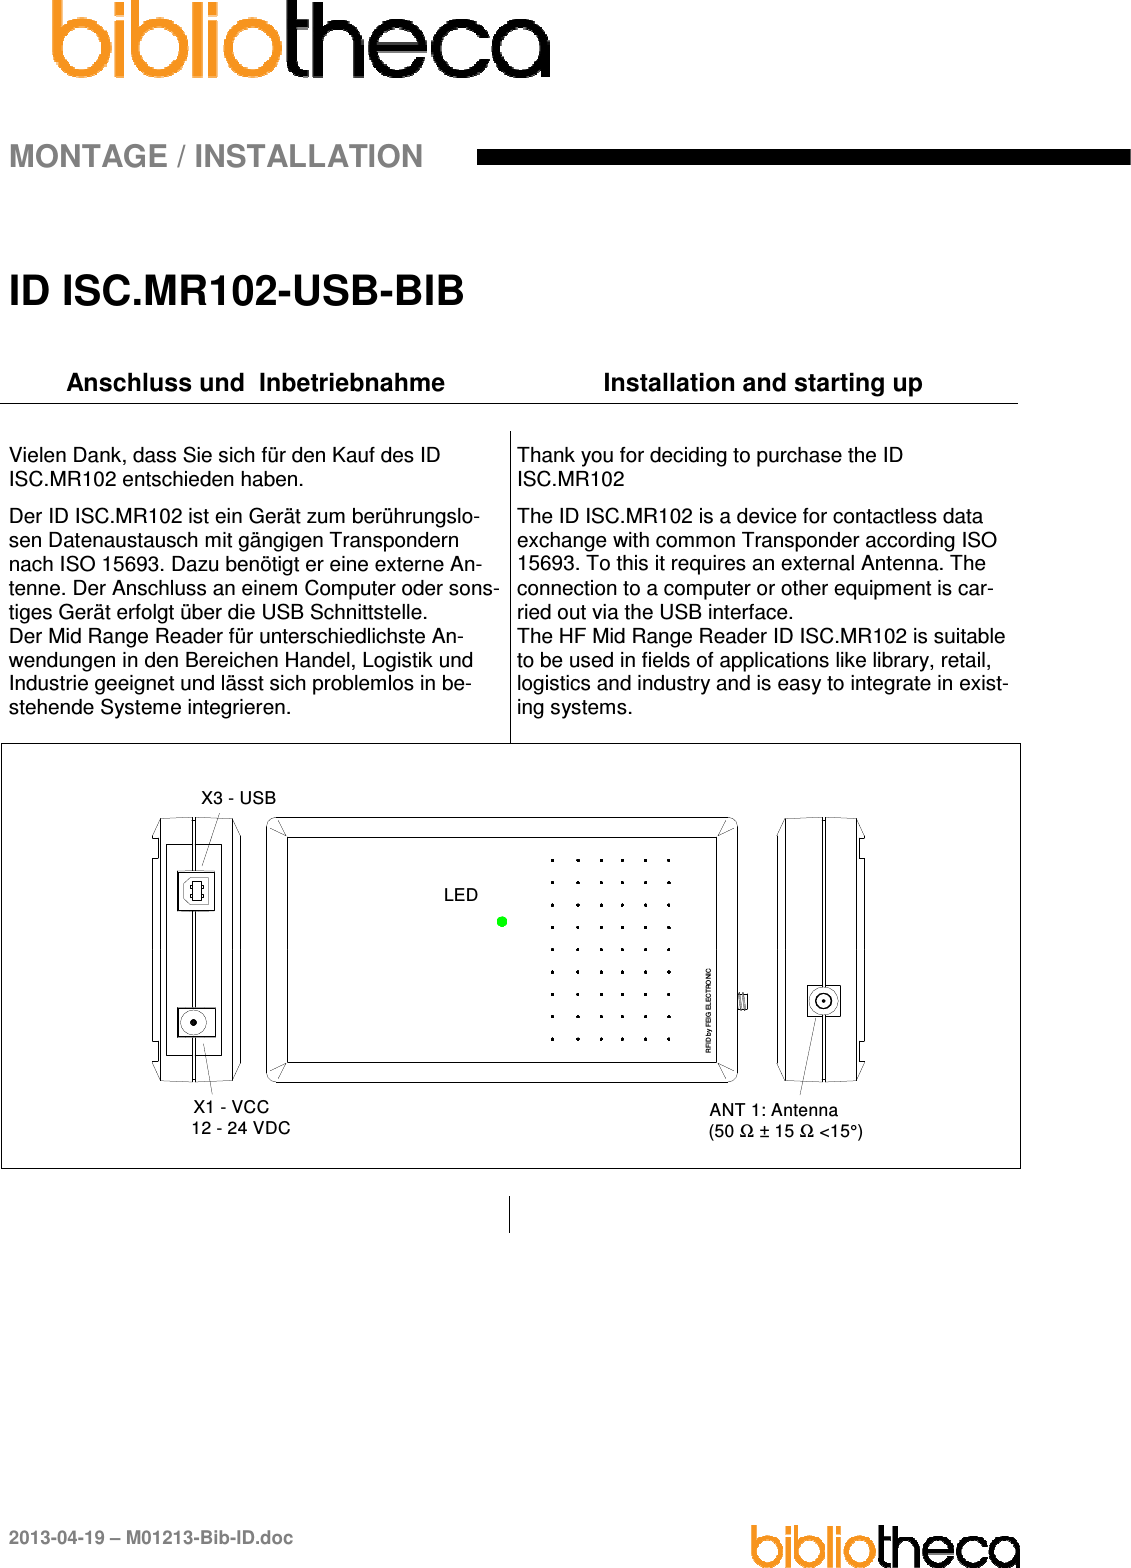 MONTAGE / INSTALLATION 2013-04-19 – M01213-Bib-ID.doc ID ISC.MR102-USB-BIB Anschluss und  Inbetriebnahme  Installation and starting up Vielen Dank, dass Sie sich für den Kauf des ID ISC.MR102 entschieden haben. Der ID ISC.MR102 ist ein Gerät zum berührungslo-sen Datenaustausch mit gängigen Transpondern nach ISO 15693. Dazu benötigt er eine externe An-tenne. Der Anschluss an einem Computer oder sons-tiges Gerät erfolgt über die USB Schnittstelle. Der Mid Range Reader für unterschiedlichste An-wendungen in den Bereichen Handel, Logistik und Industrie geeignet und lässt sich problemlos in be-stehende Systeme integrieren. Thank you for deciding to purchase the ID ISC.MR102 The ID ISC.MR102 is a device for contactless data exchange with common Transponder according ISO 15693. To this it requires an external Antenna. The connection to a computer or other equipment is car-ried out via the USB interface. The HF Mid Range Reader ID ISC.MR102 is suitable to be used in fields of applications like library, retail, logistics and industry and is easy to integrate in exist-ing systems. X3 - USBX1 - VCC12 - 24 VDCRFID by FEIG ELECTRONICLEDANT 1: Antenna(50 Ω ± 15 Ω &lt;15°)